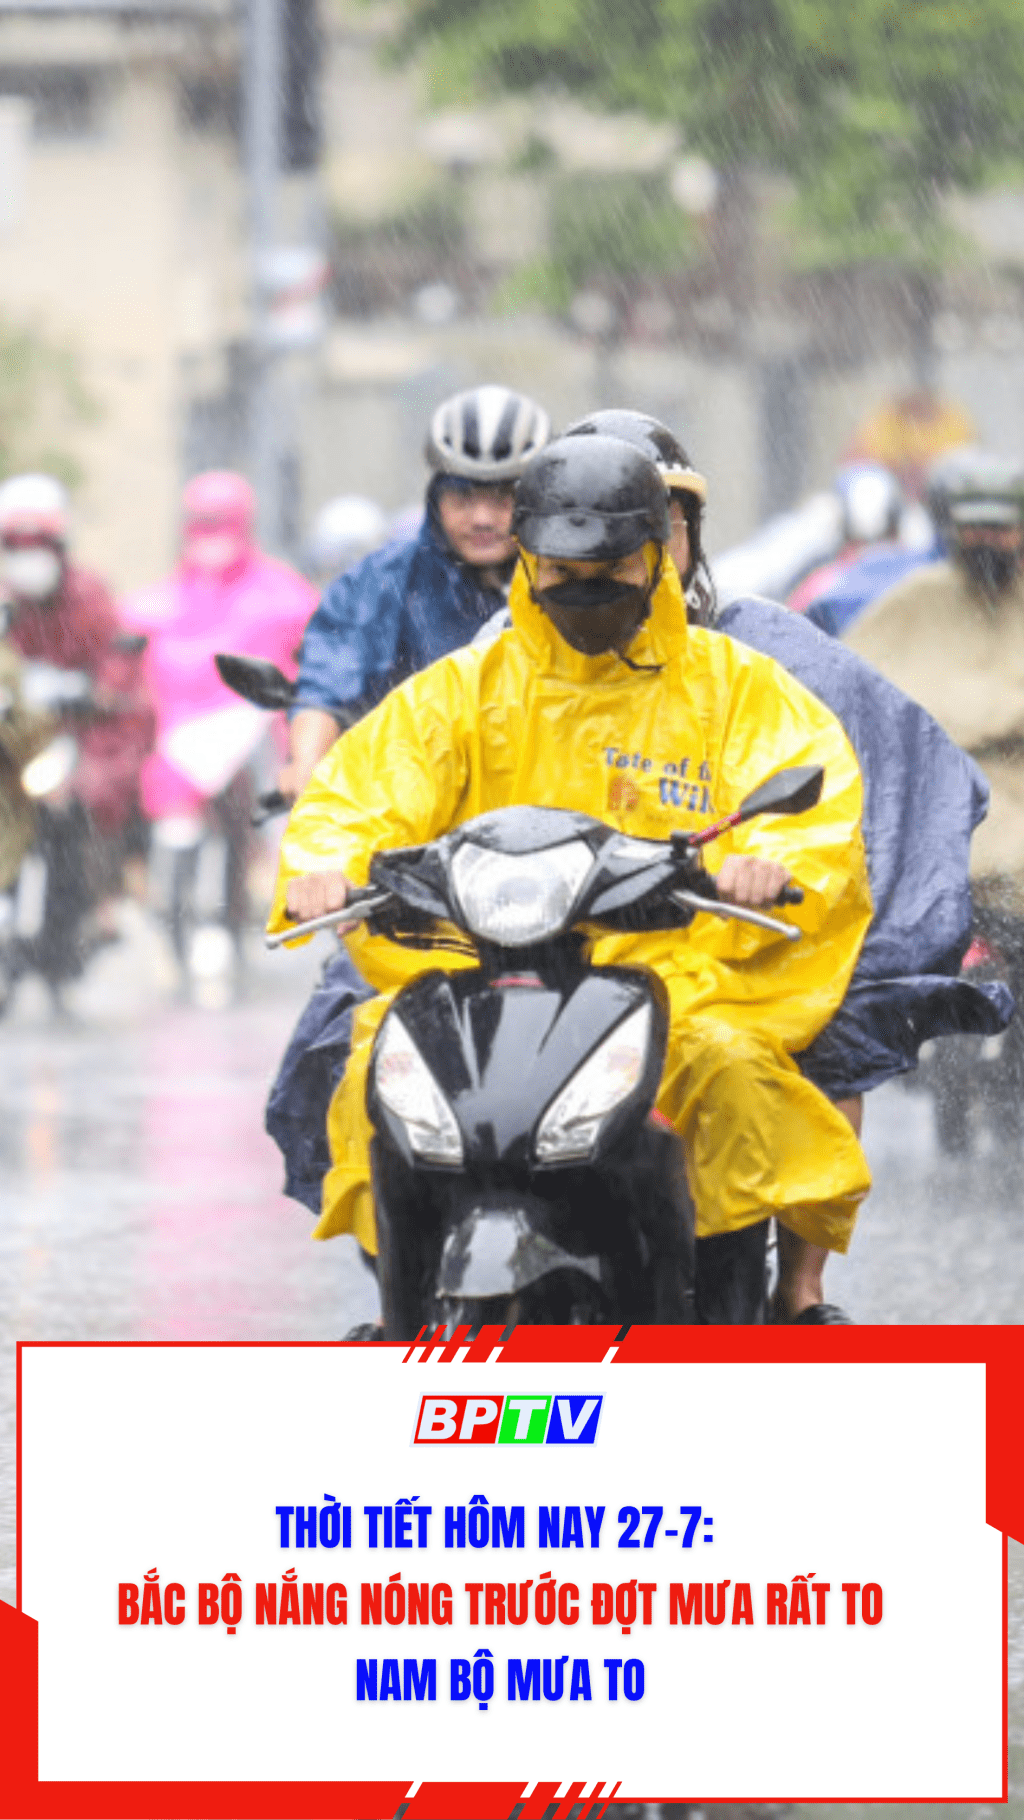 Thời tiết hôm nay 27-7: Bắc Bộ nắng nóng trước đợt mưa rất to, Nam Bộ mưa to #shorts